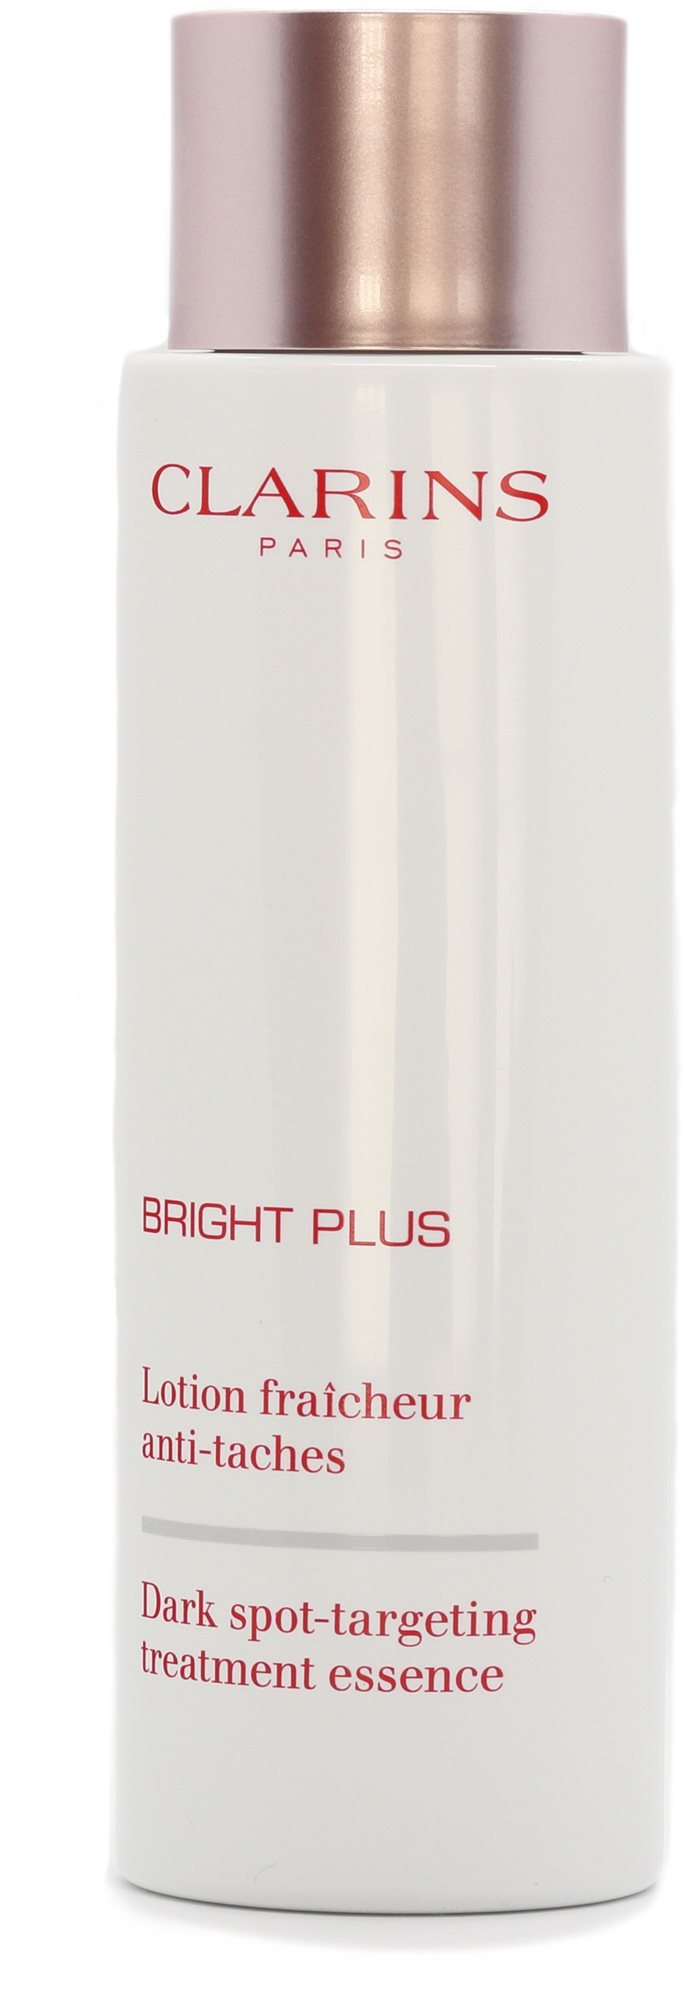 CLARINS Bright Plus Dark Spot-Targeting Treatment Essence 200 ml